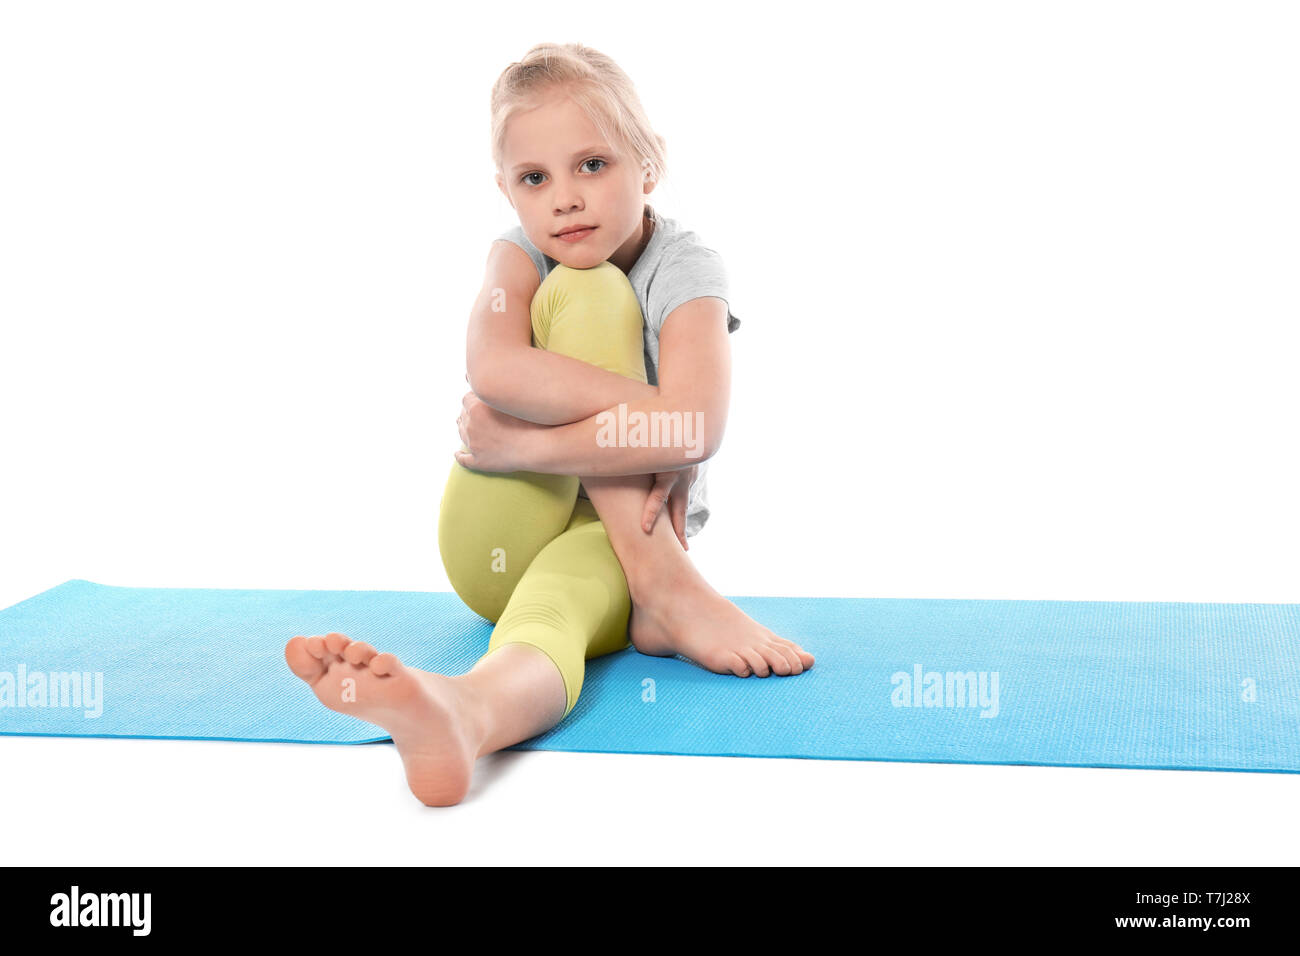 Cute little girl practice yoga Stock Photo - Alamy